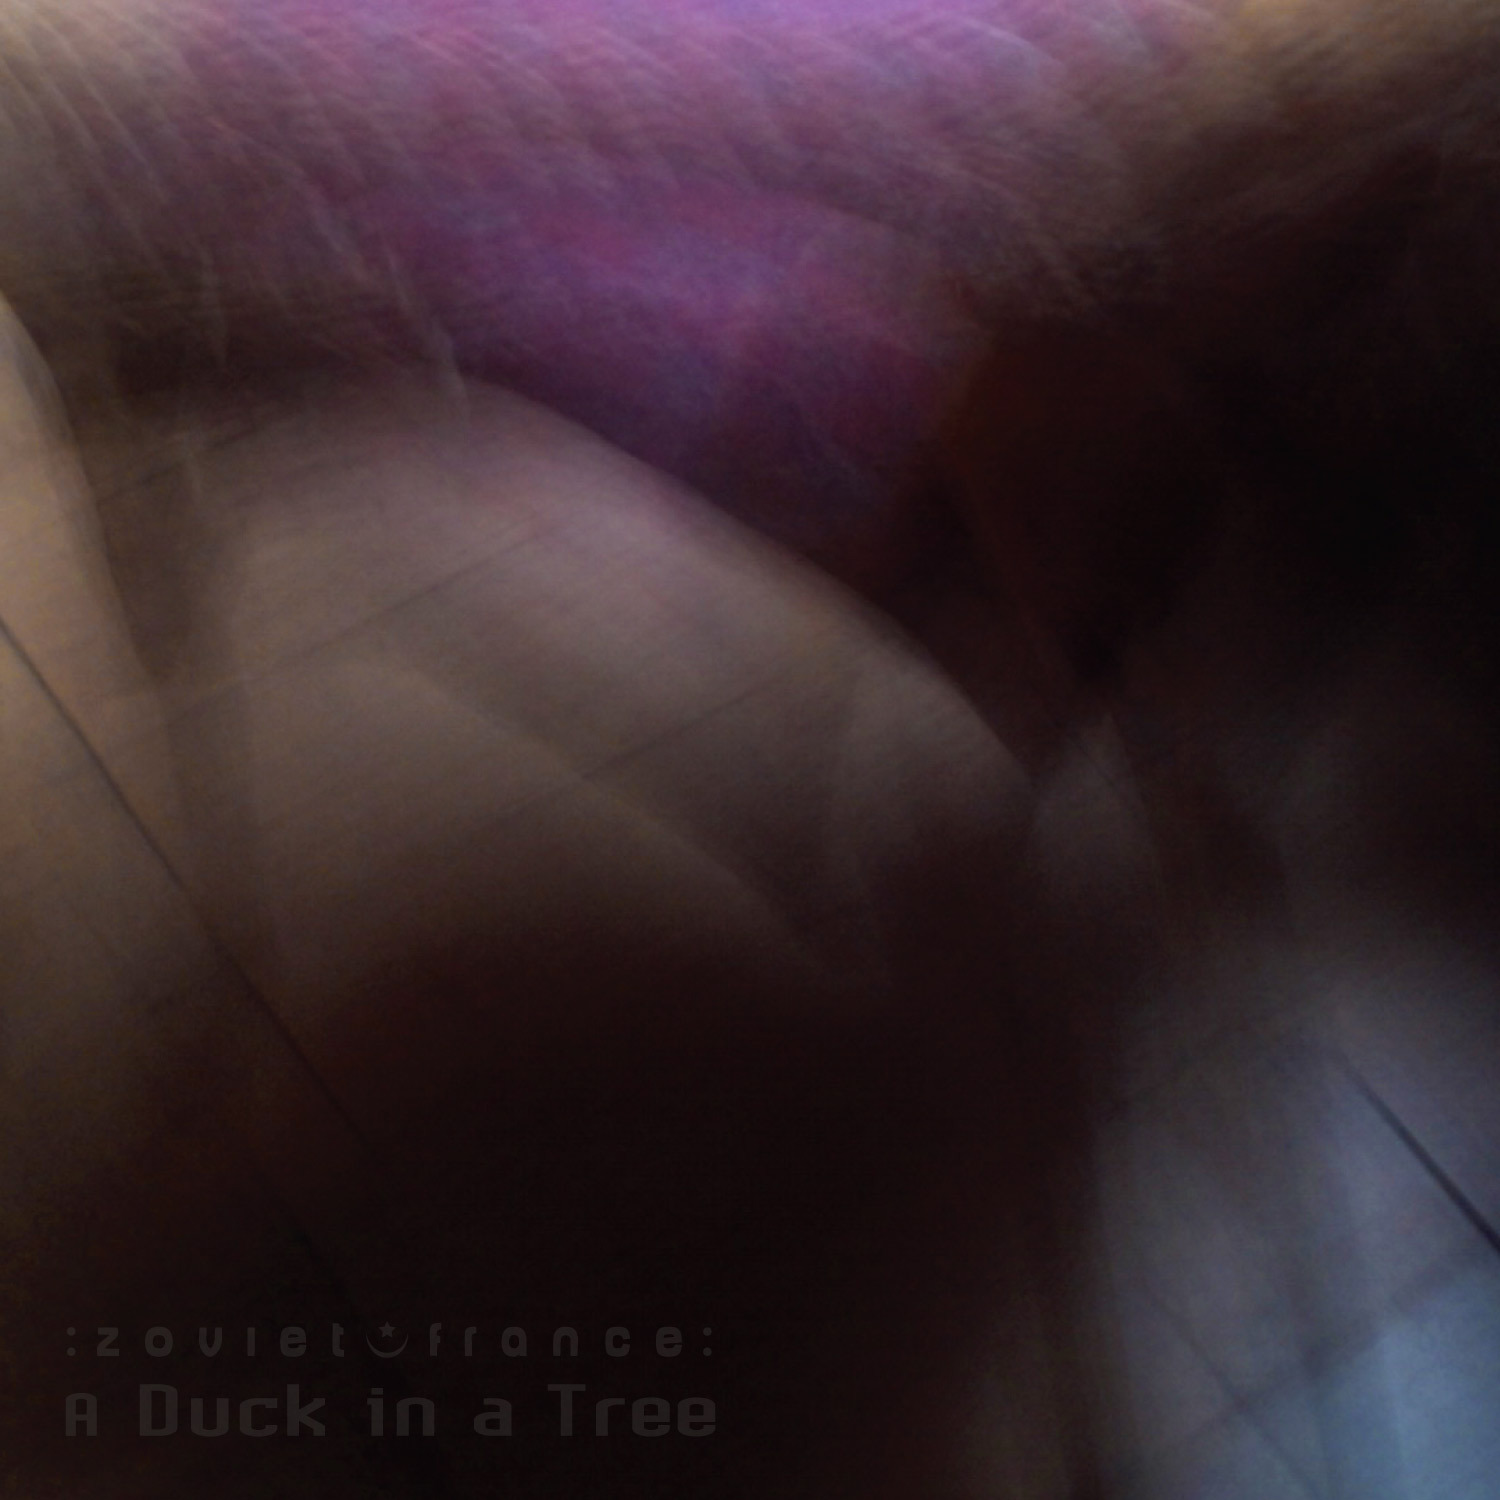 A-Duck-in-a-Tree-2019-03-09-_-A-Night-of-Fire-and-a-Day-of-Ashes-cover-1500.jpg